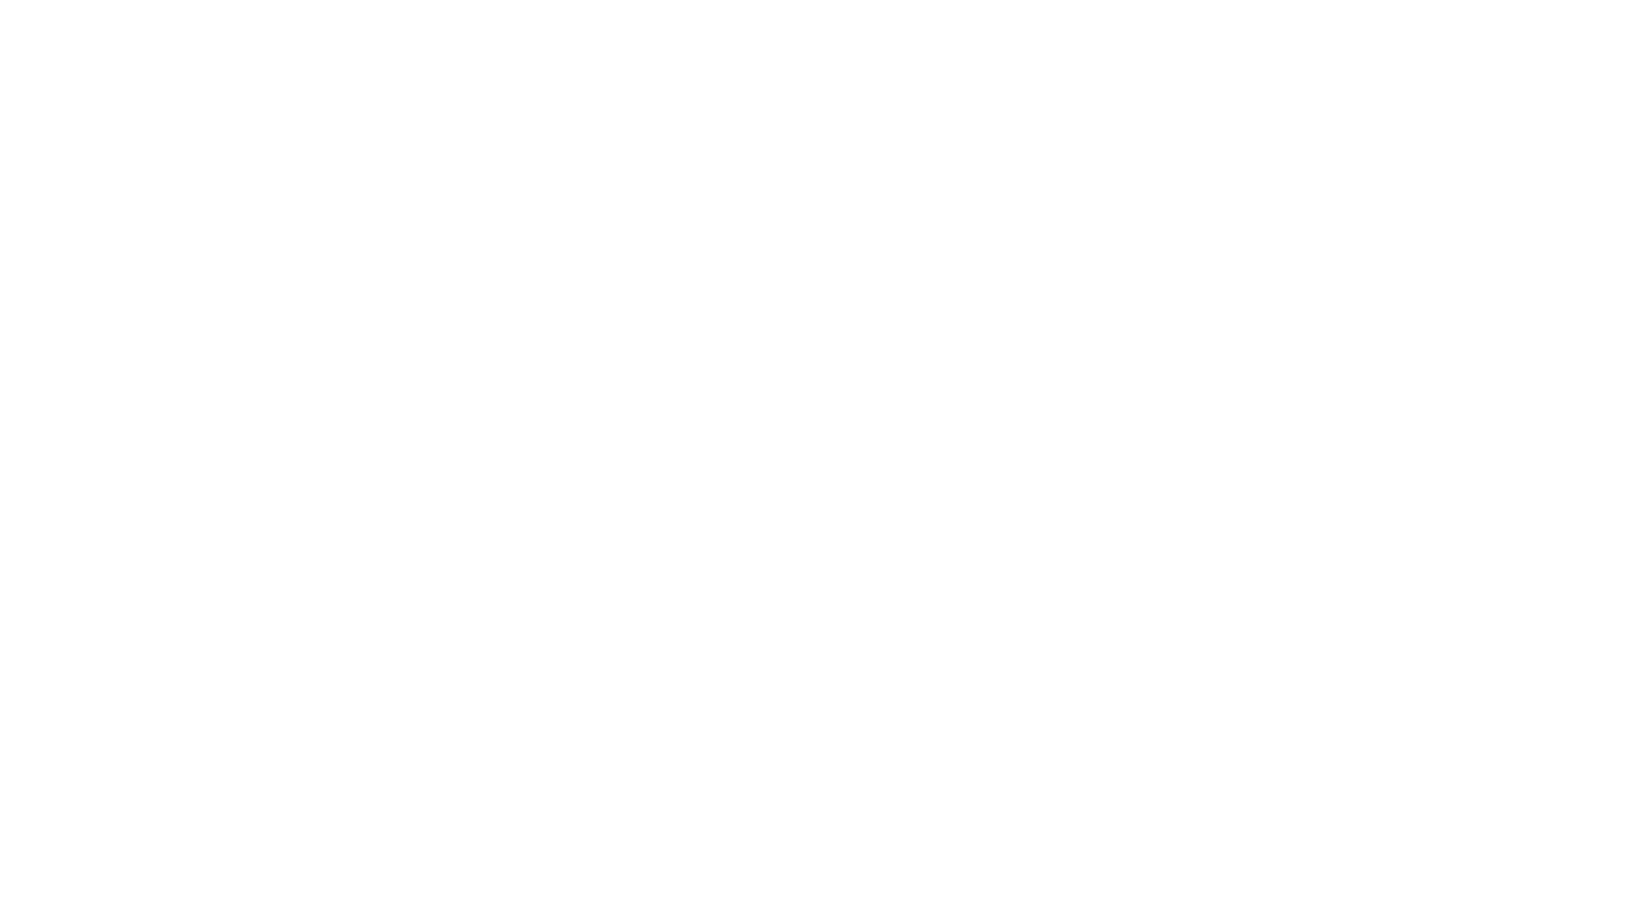 Кейс сервиса BRANDNATION - Фирменный стиль проекта с фокусом на пасту. Брендинговое агентство BRANDNATION в Москве и Санкт-Петербурге. Услуги: разработка логотипа и фирменного стиля, дизайн упаковки, брендбук, ребрендинг, разработка сайта.